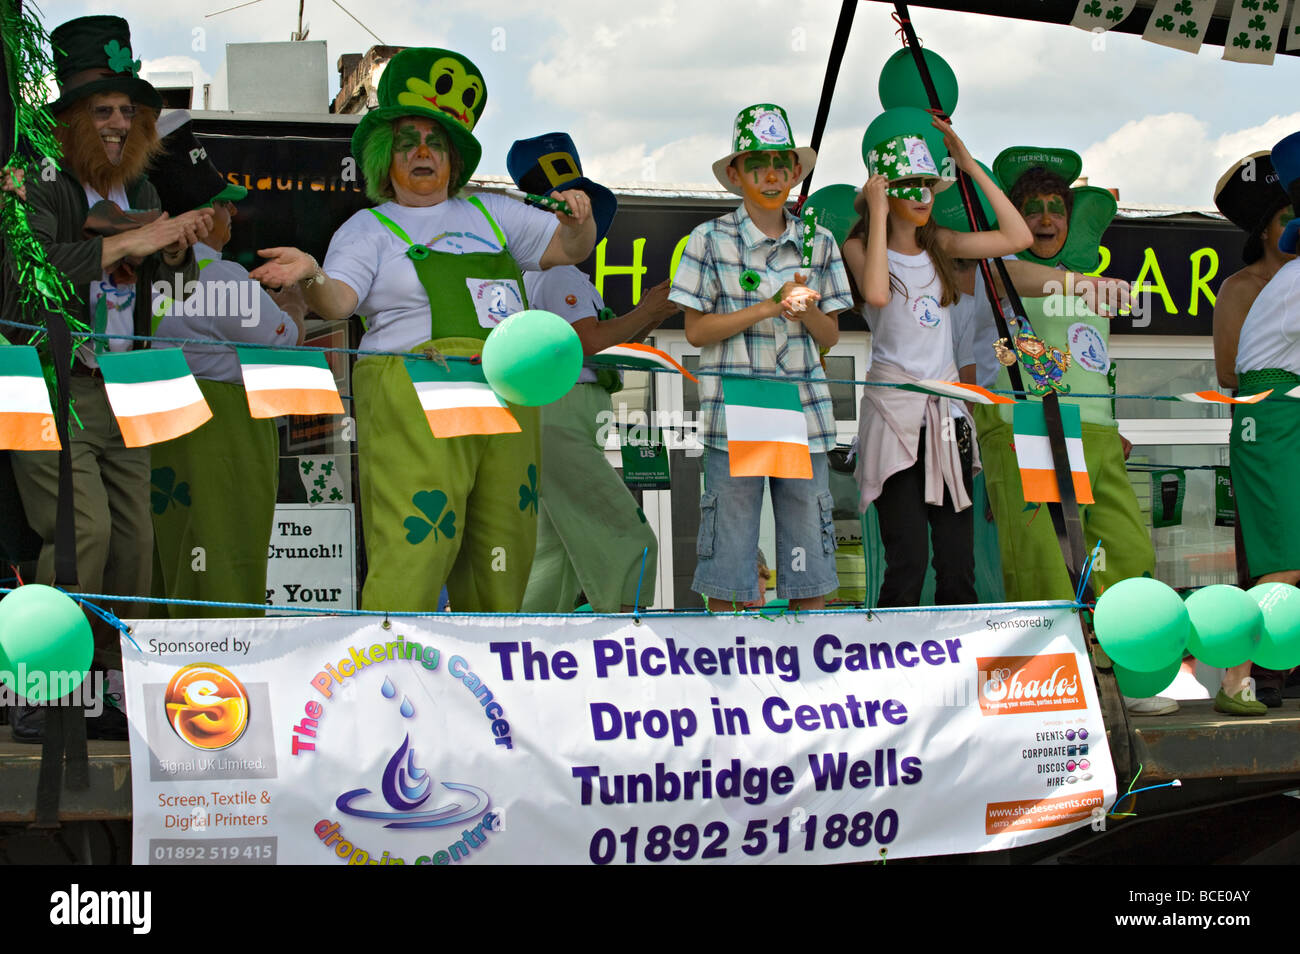 Un Carnaval flotter la publicité d'un organisme de bienfaisance locales de lutte contre le cancer à Tonbridge, Kent, Angleterre.. Banque D'Images